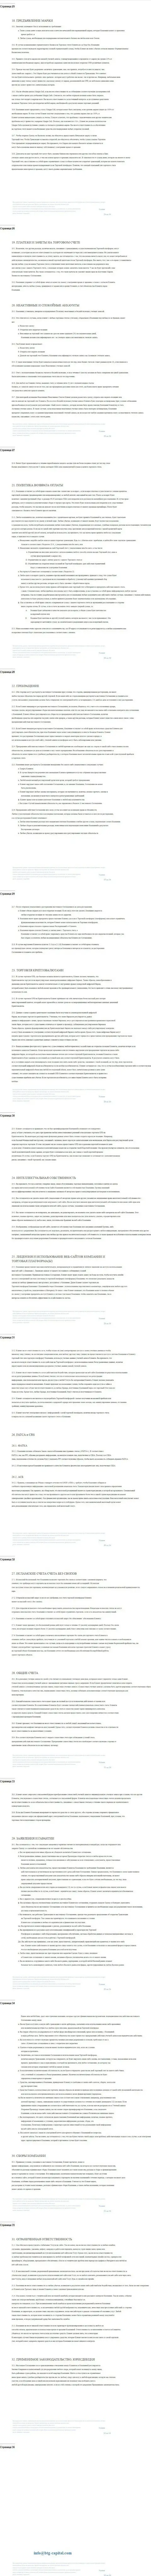 Часть третья пользовательского соглашения компании BTGCapital